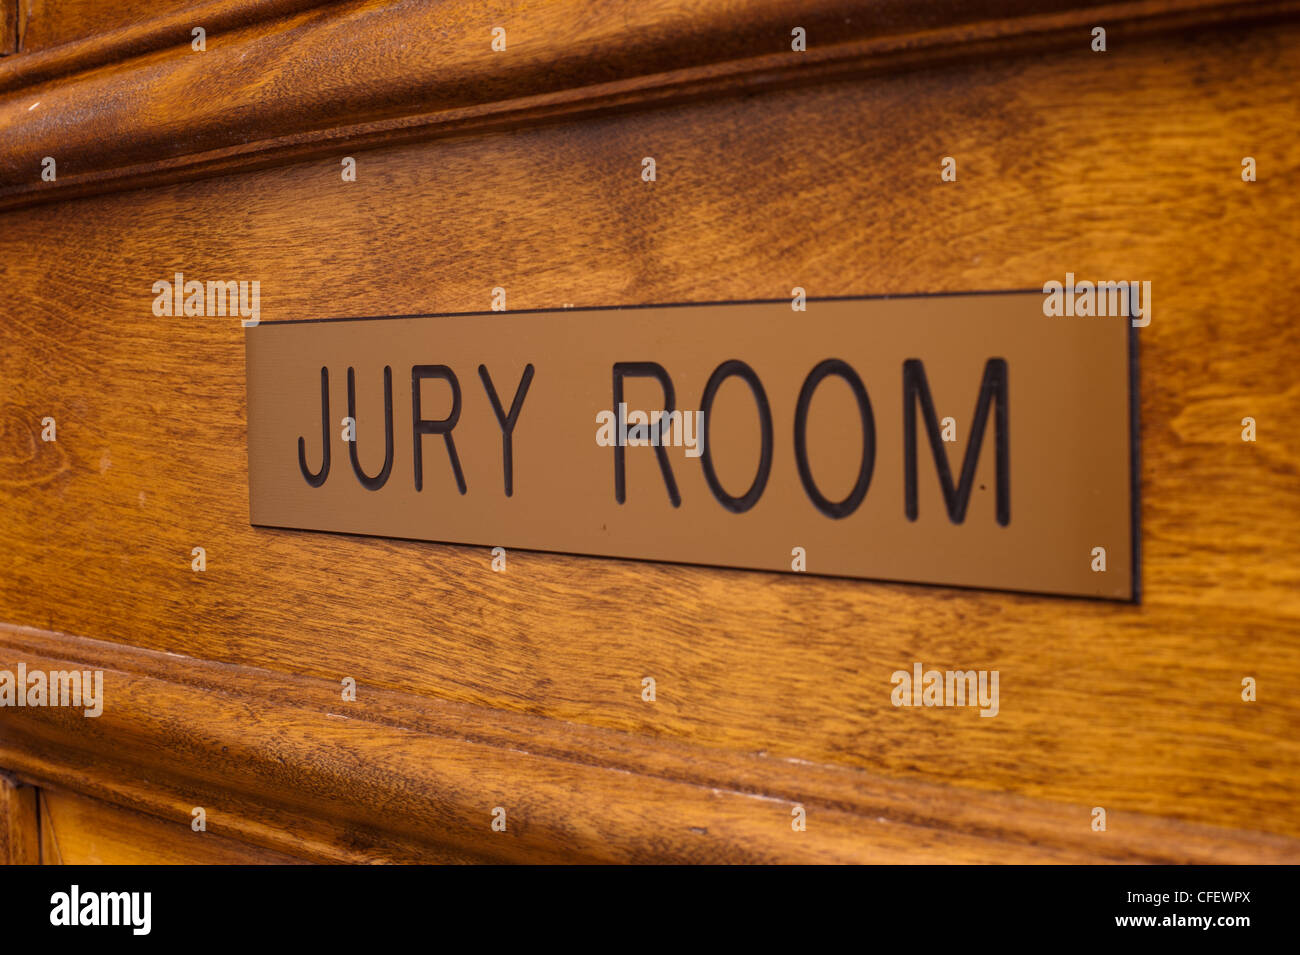 Jury room door. Stock Photo